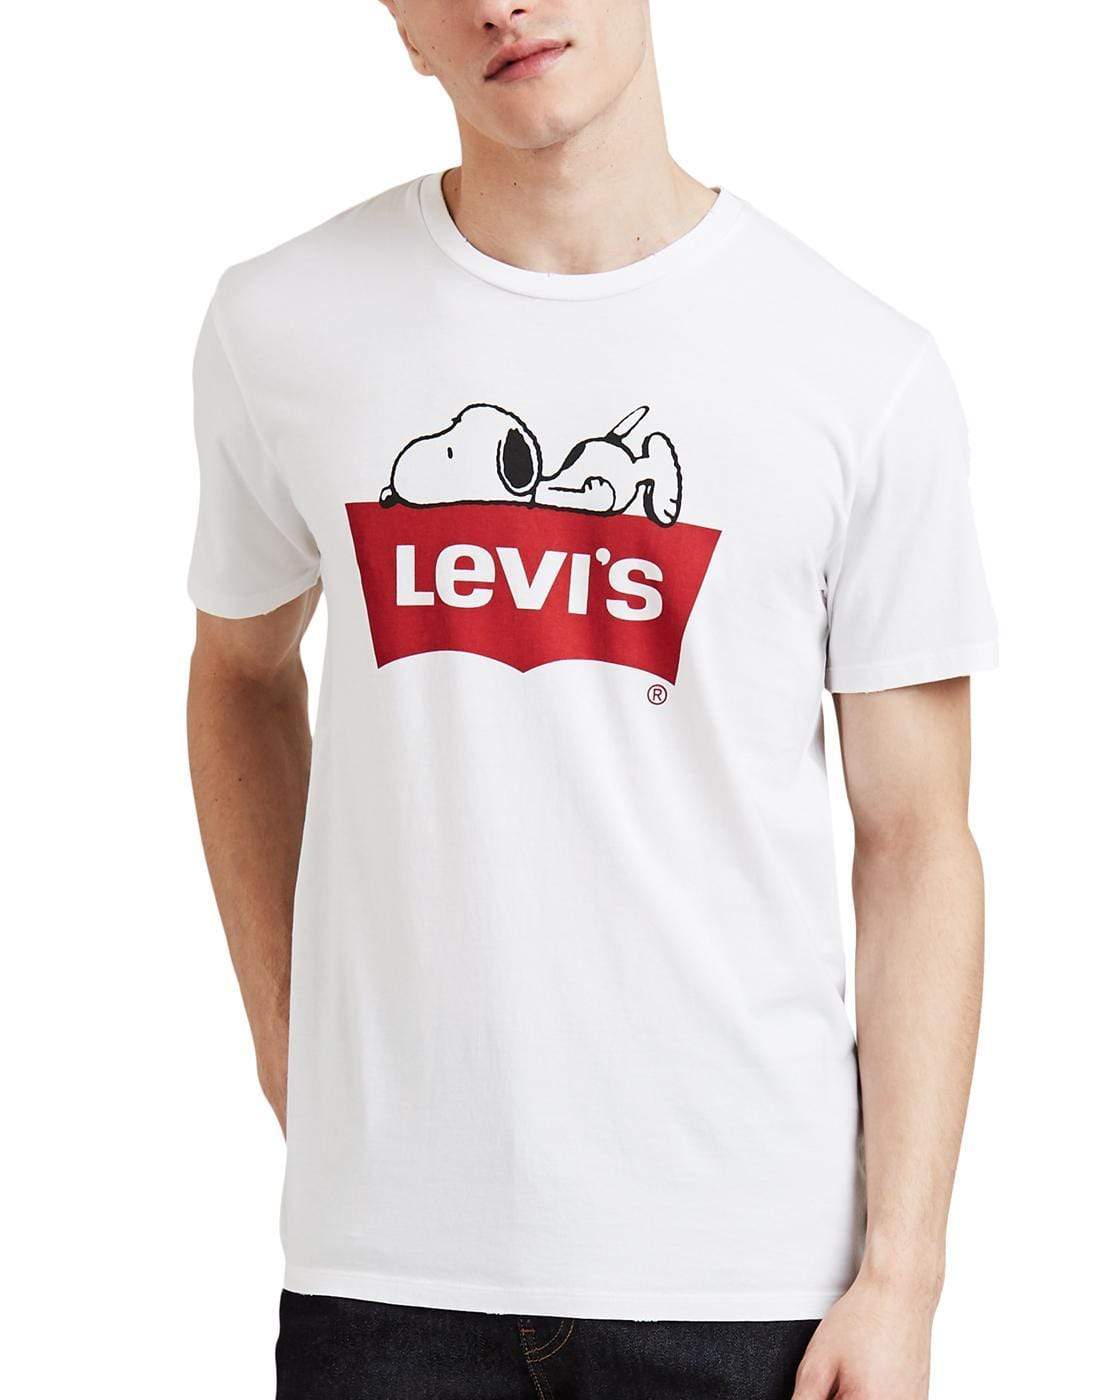 Levi's Mens Tops S Peanuts Classic Logo Tee